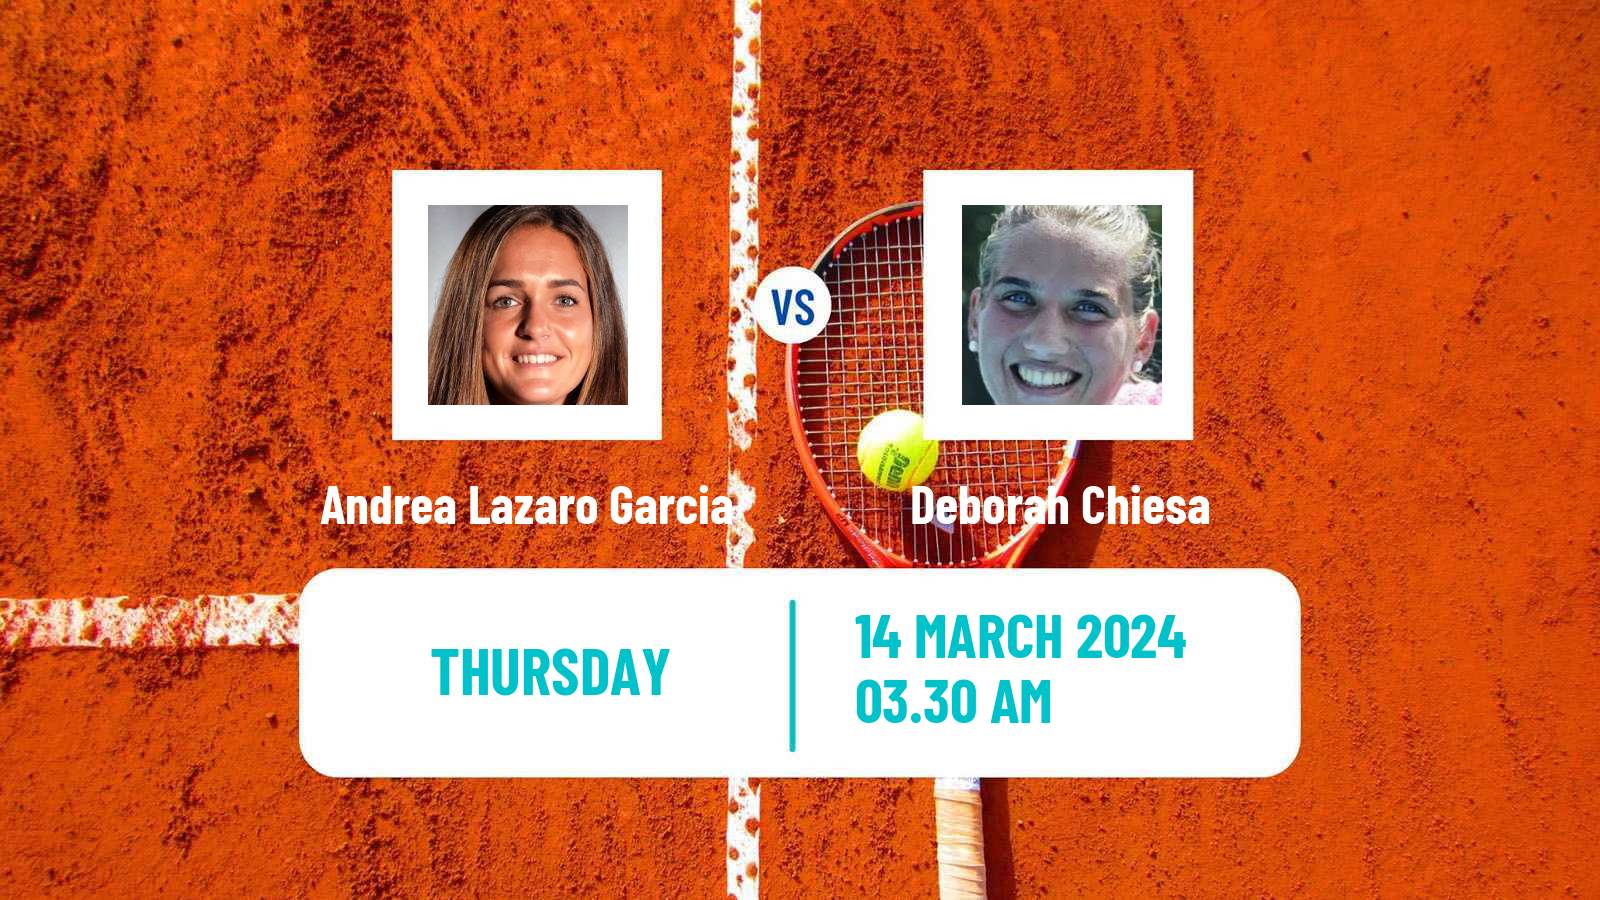 Tennis ITF W35 Alaminos Larnaca Women Andrea Lazaro Garcia - Deborah Chiesa